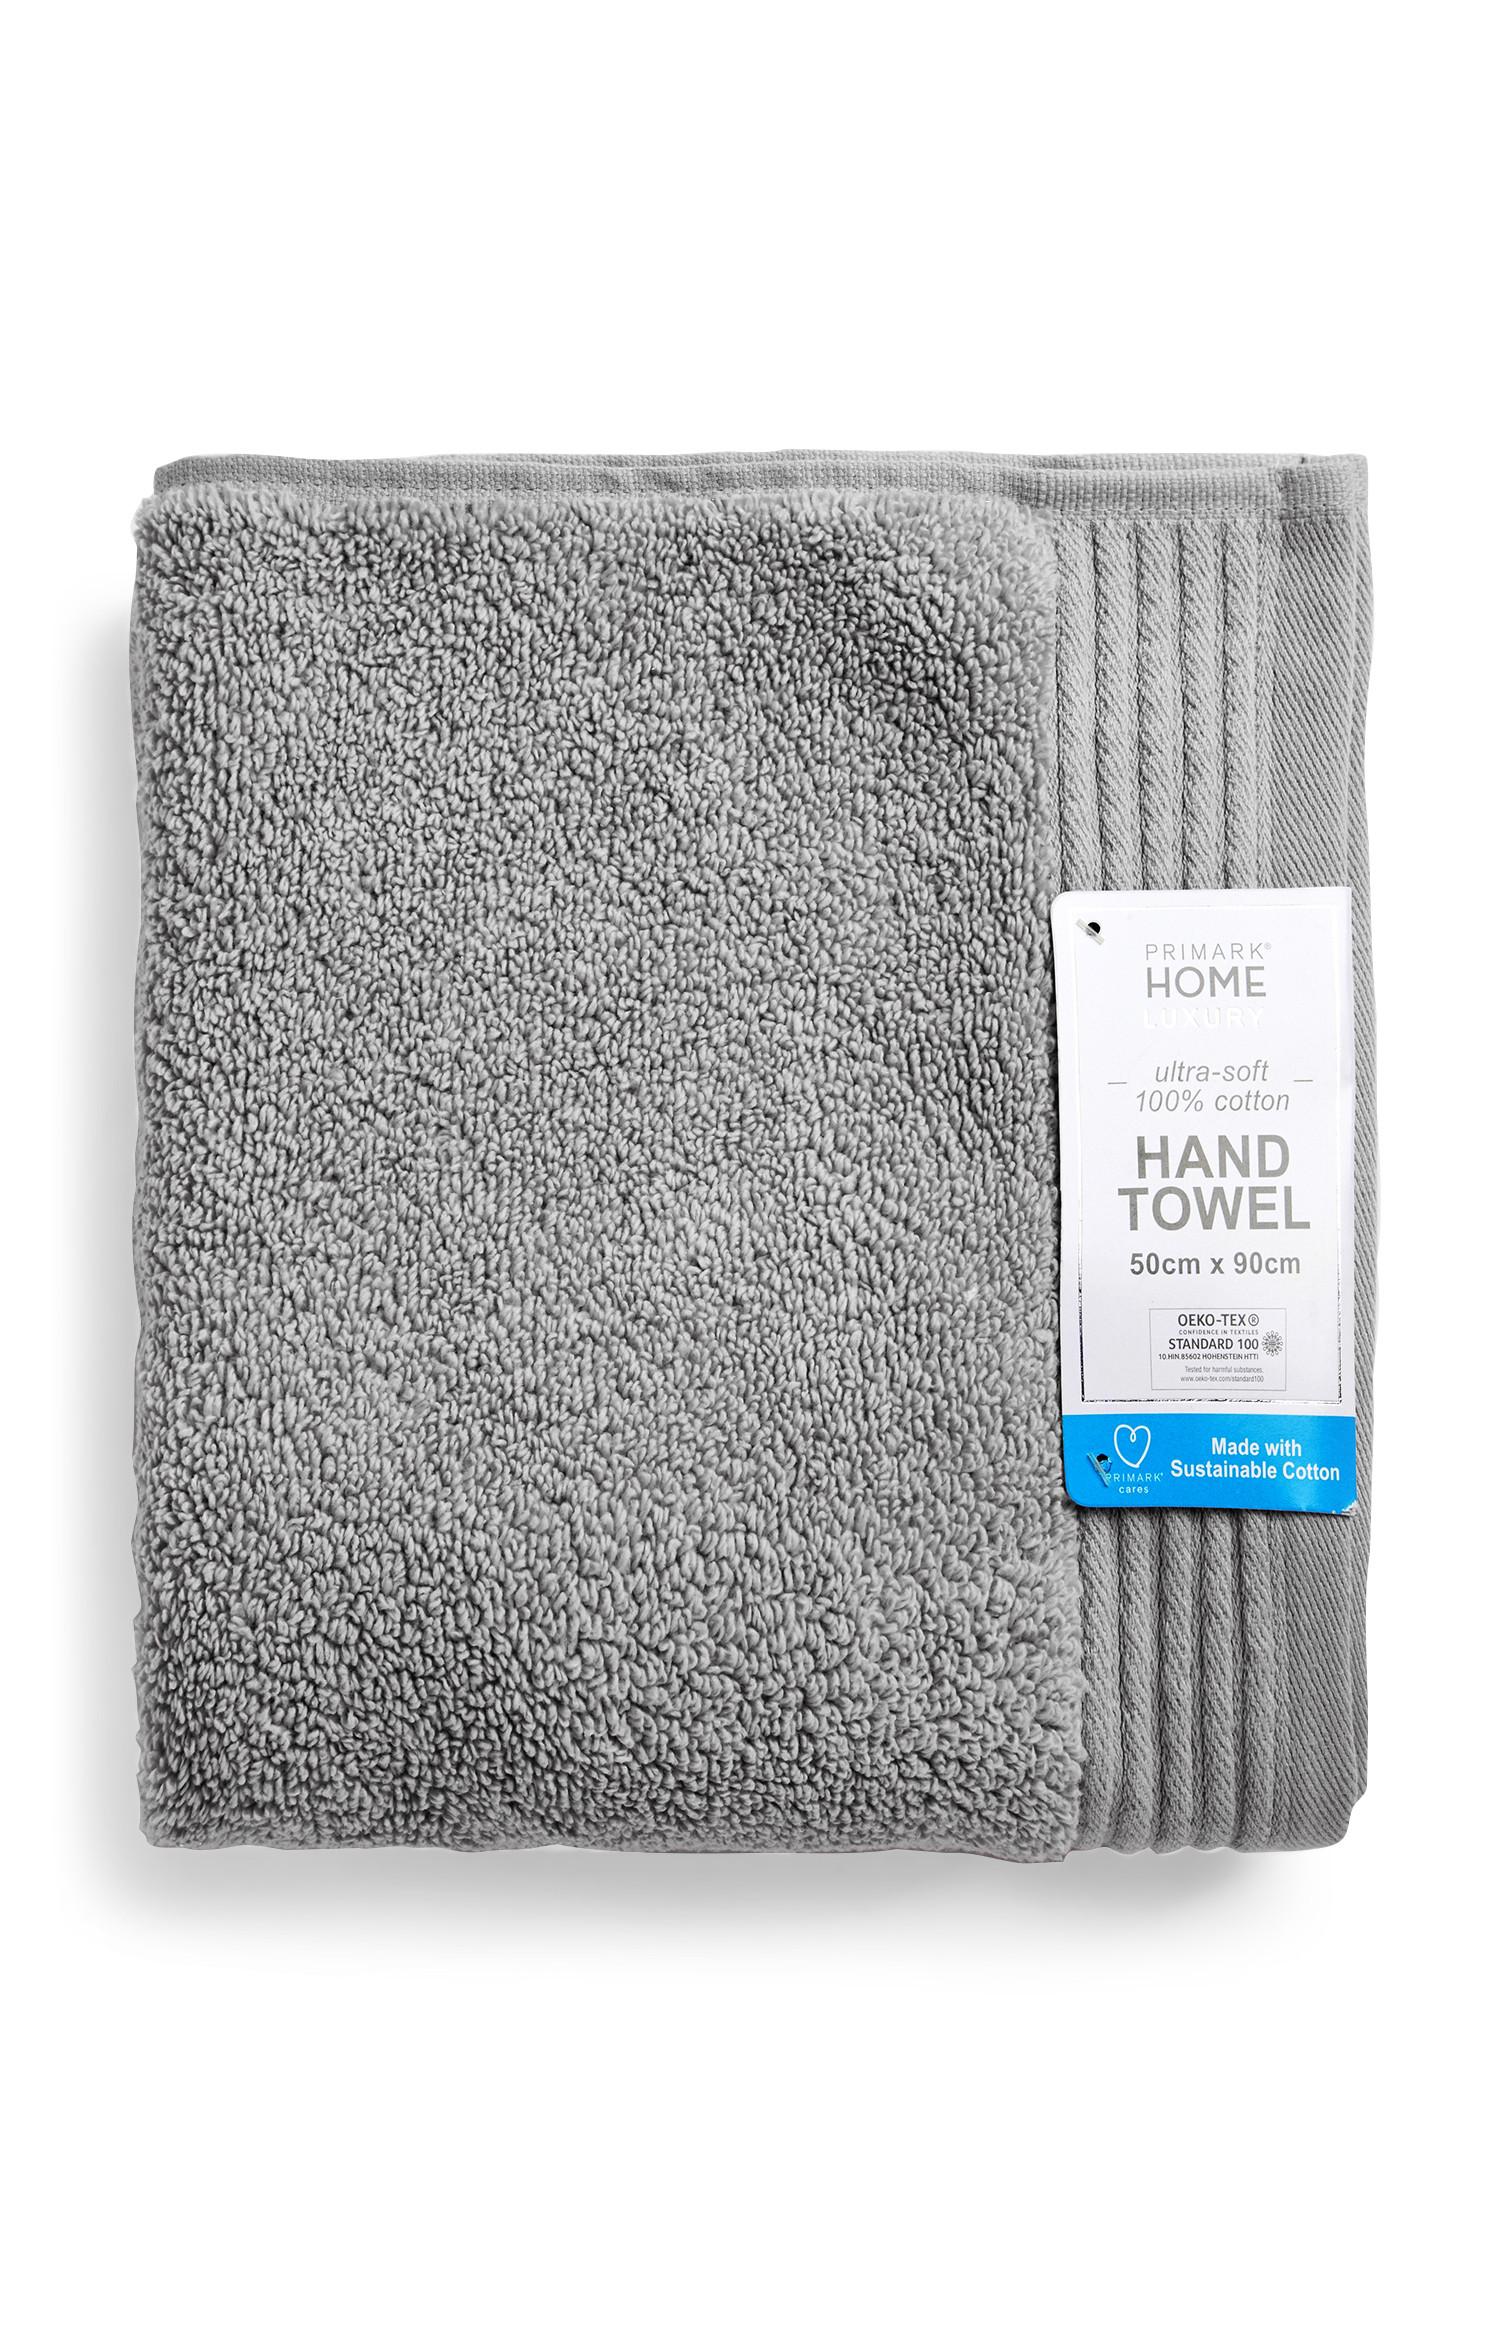 Verrijken oogsten Dertig Luxe grijze handdoek | Accessoires voor in de badkamer | Alle woonartikelen  | Woonartikelen | Alle Primark-producten | Primark Nederland